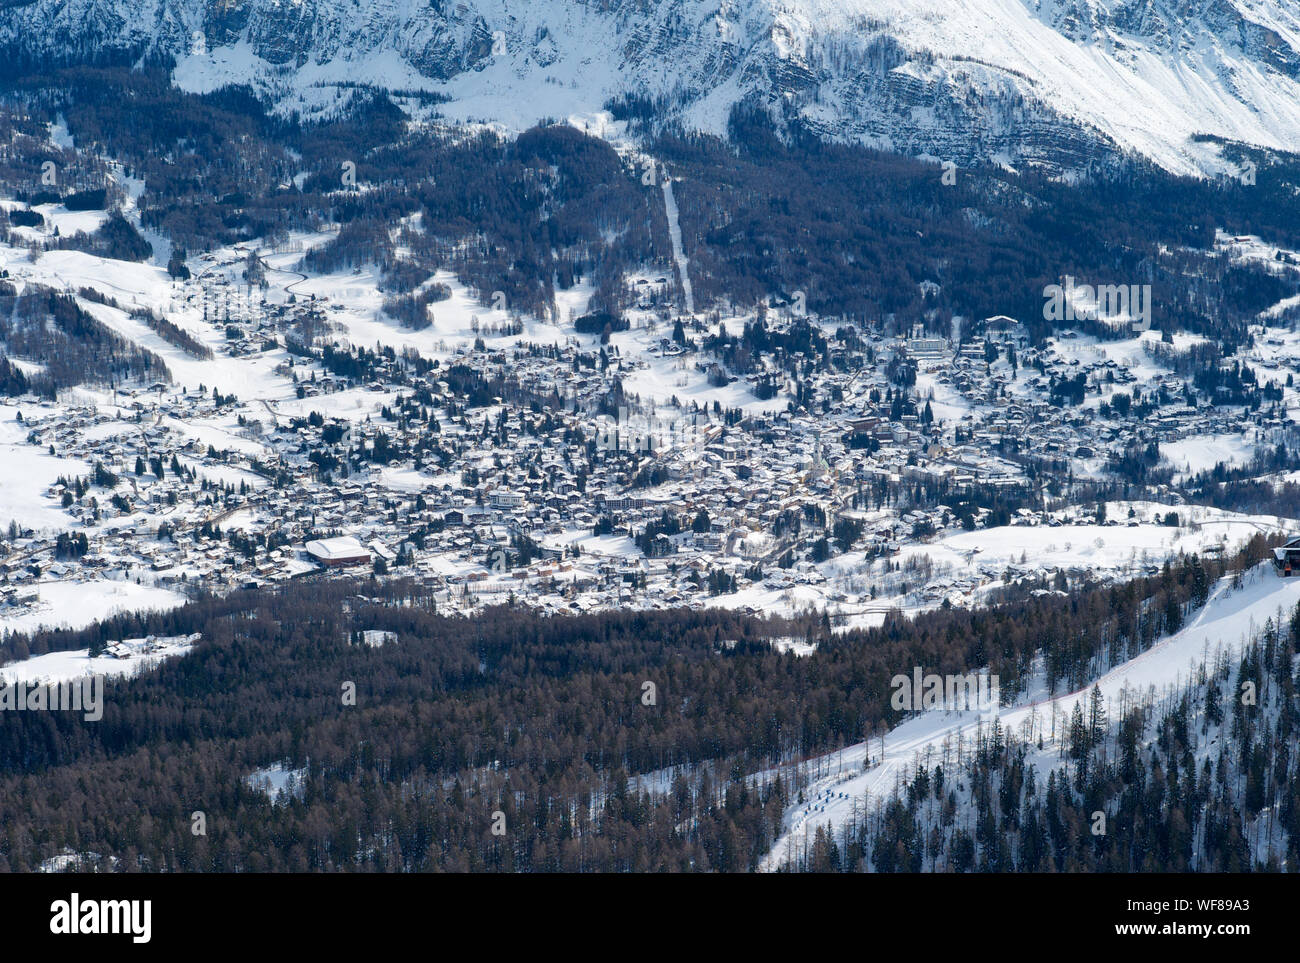 Das romantische, Verschneite Skigebiet Cortina d'Ampezzo in den italienischen Dolomiten von tofana gesehen. Stockfoto